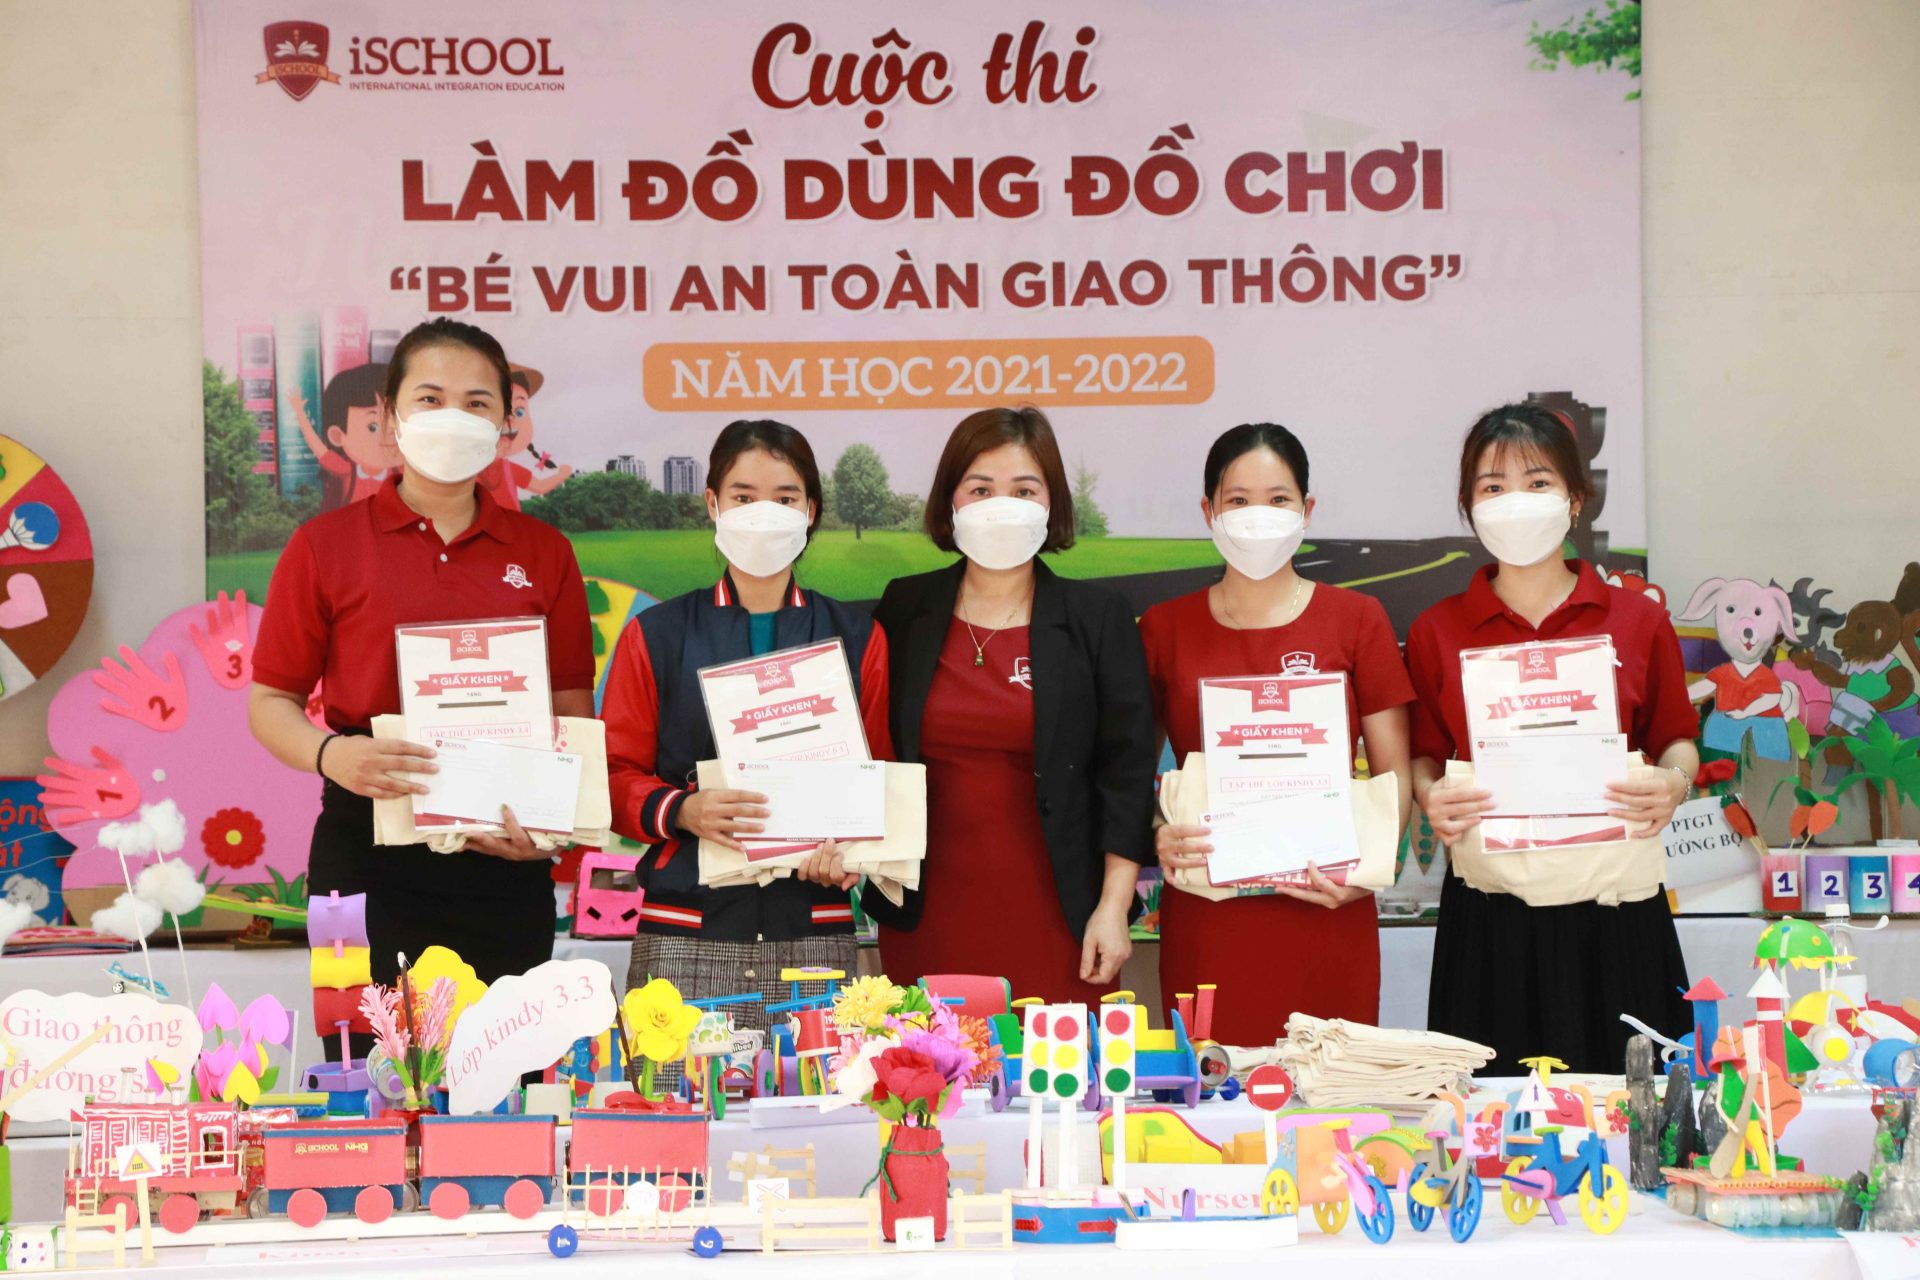 Giáo viên iSchool Hà Tĩnh sáng tạo với cuộc thi Làm đồ dùng đồ chơi “Bé vui an toàn giao thông”